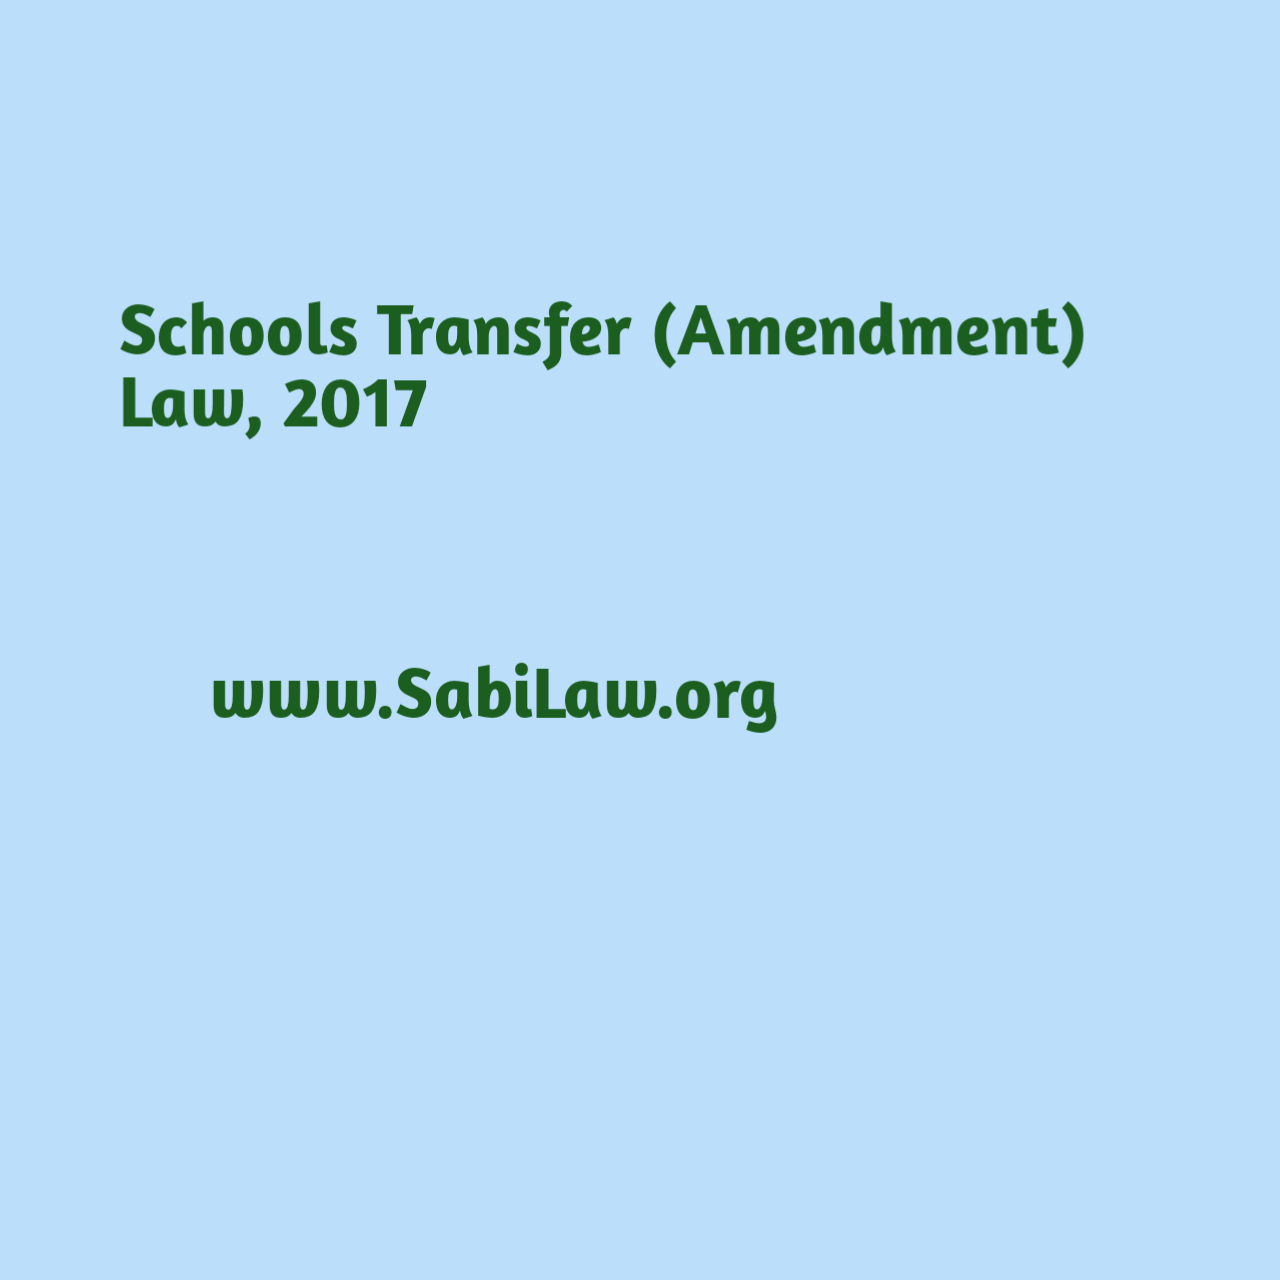 Schools Transfer (Amendment) Law, 2017